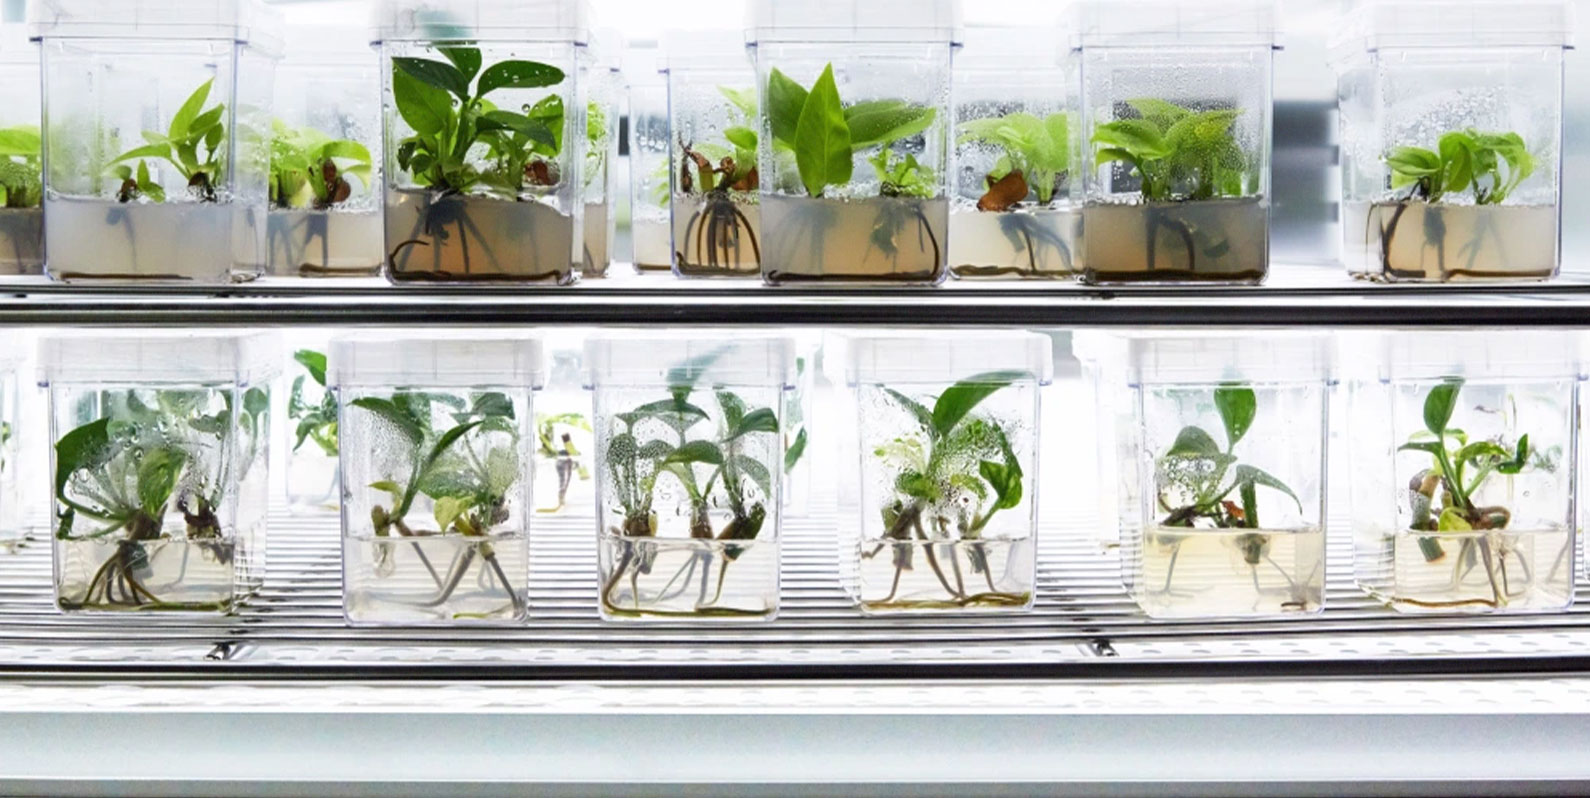 Plantas são geneticamente modificadas para potencializar qualidades de purificação do ar